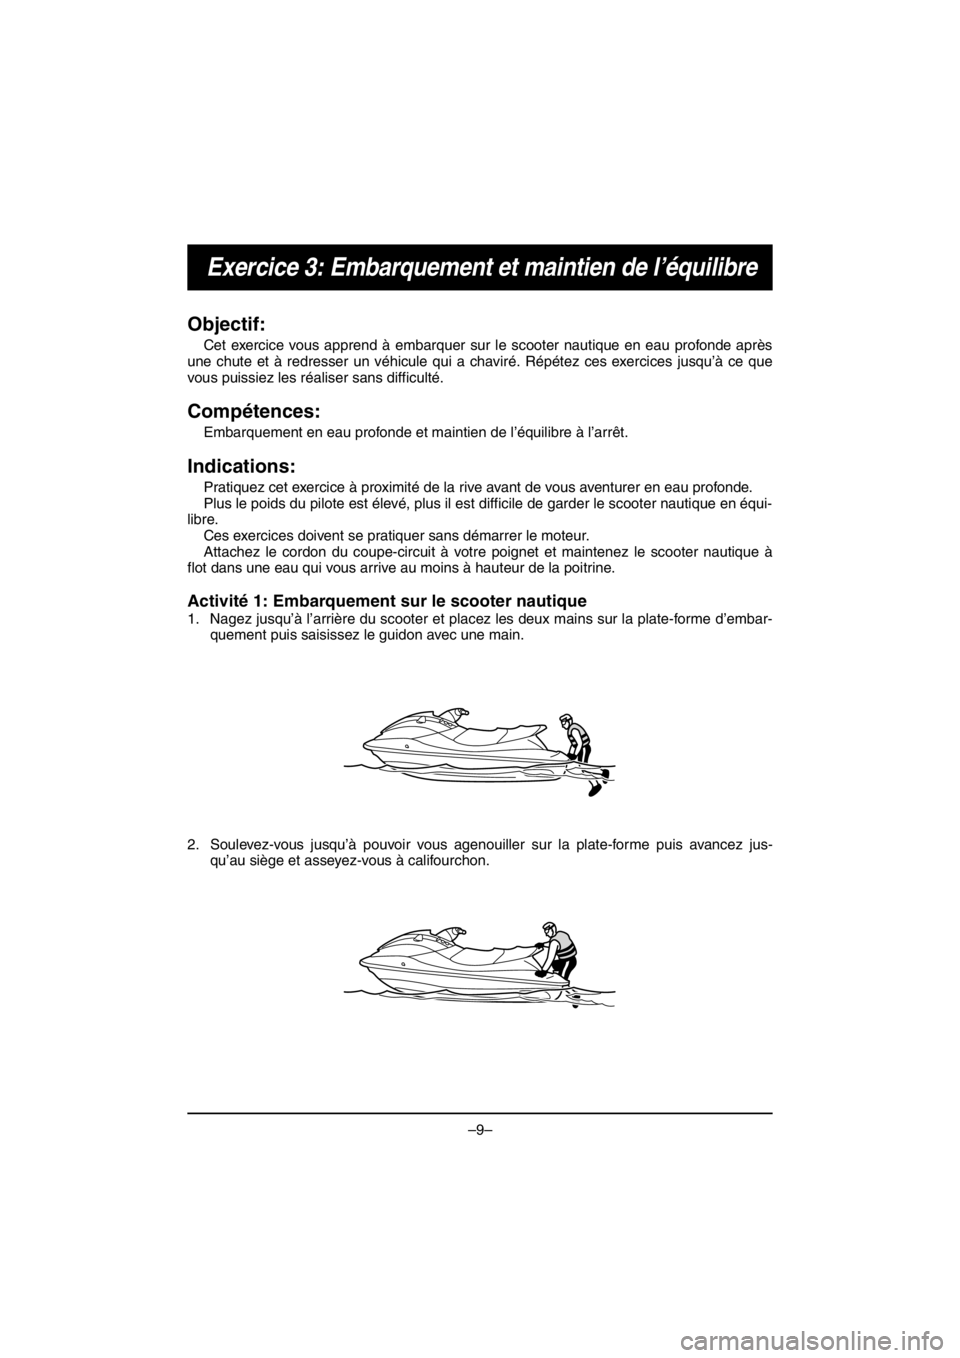 YAMAHA V1 2016  Notices Demploi (in French) –9–
Exercice 3: Embarquement et maintien de l’équilibre
Objectif:
Cet exercice vous apprend à embarquer sur le scooter nautique en eau profonde après
une chute et à redresser un véhicule qu